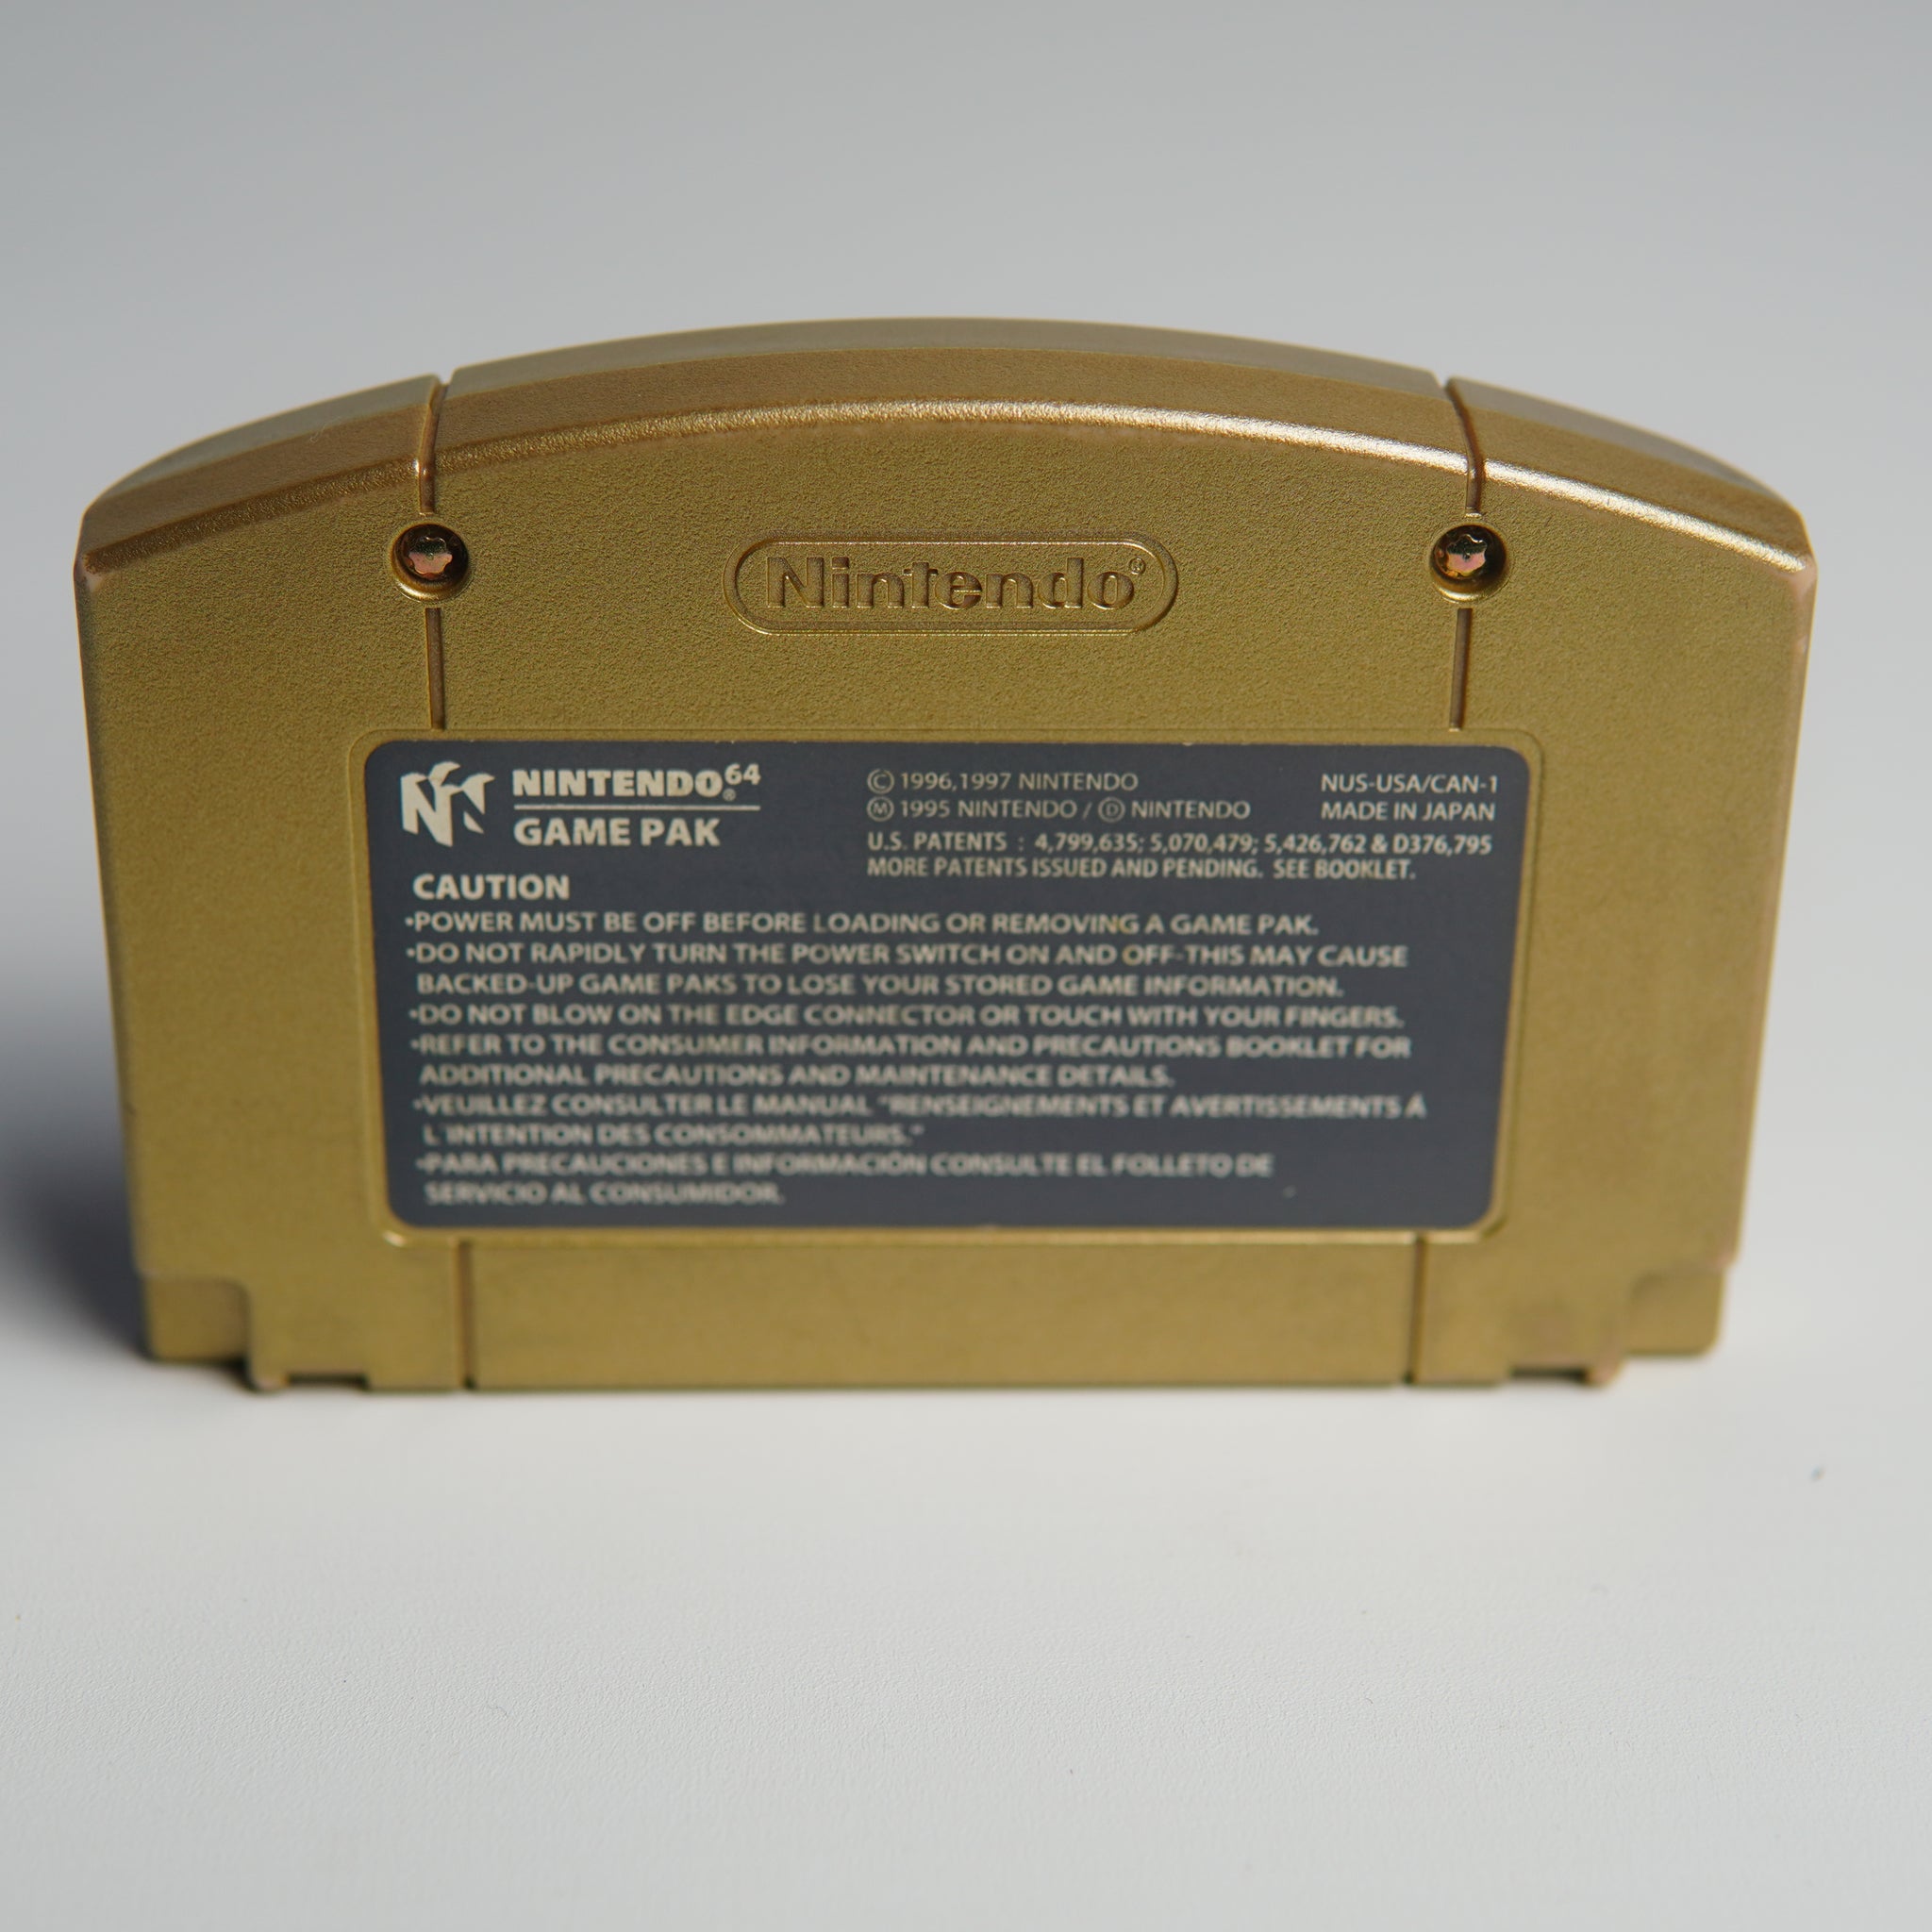 Legend Of Zelda: Ocarina Of Time Nintendo 64 Game Cassette